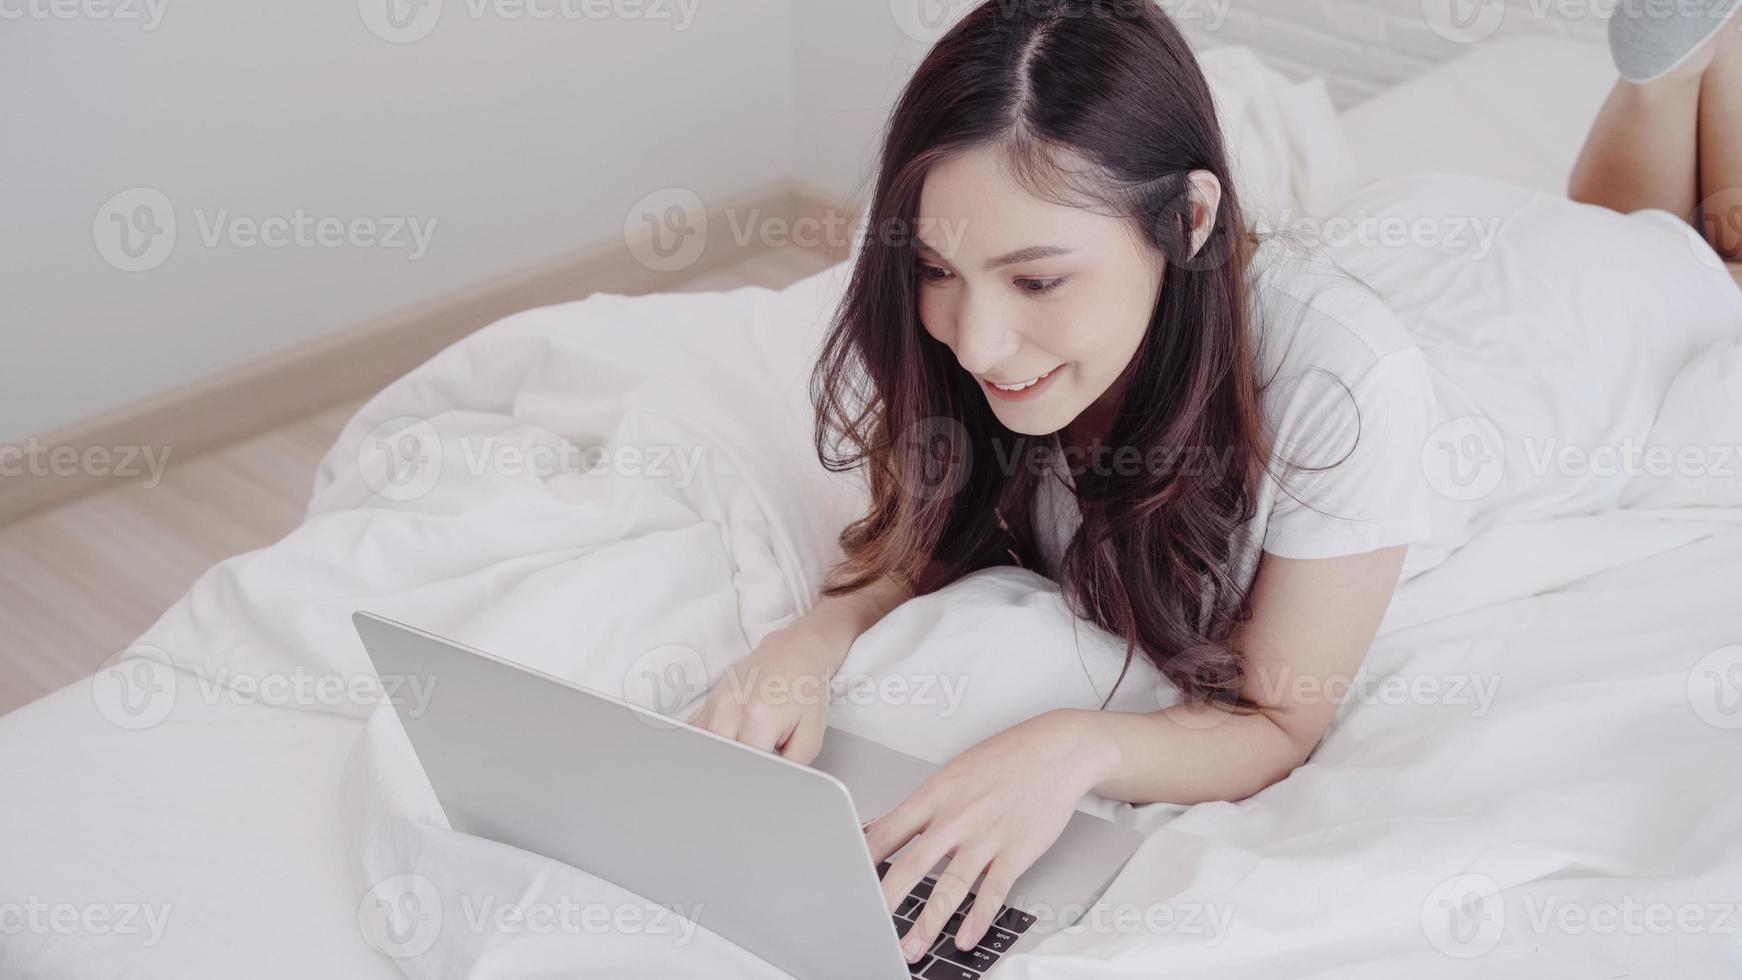 ritratto di bella donna asiatica attraente che utilizza computer o laptop e ascolta musica mentre è sdraiata sul letto quando si rilassa nella sua camera da letto a casa. donne di stile di vita che utilizzano il concetto di tempo di relax a casa. foto